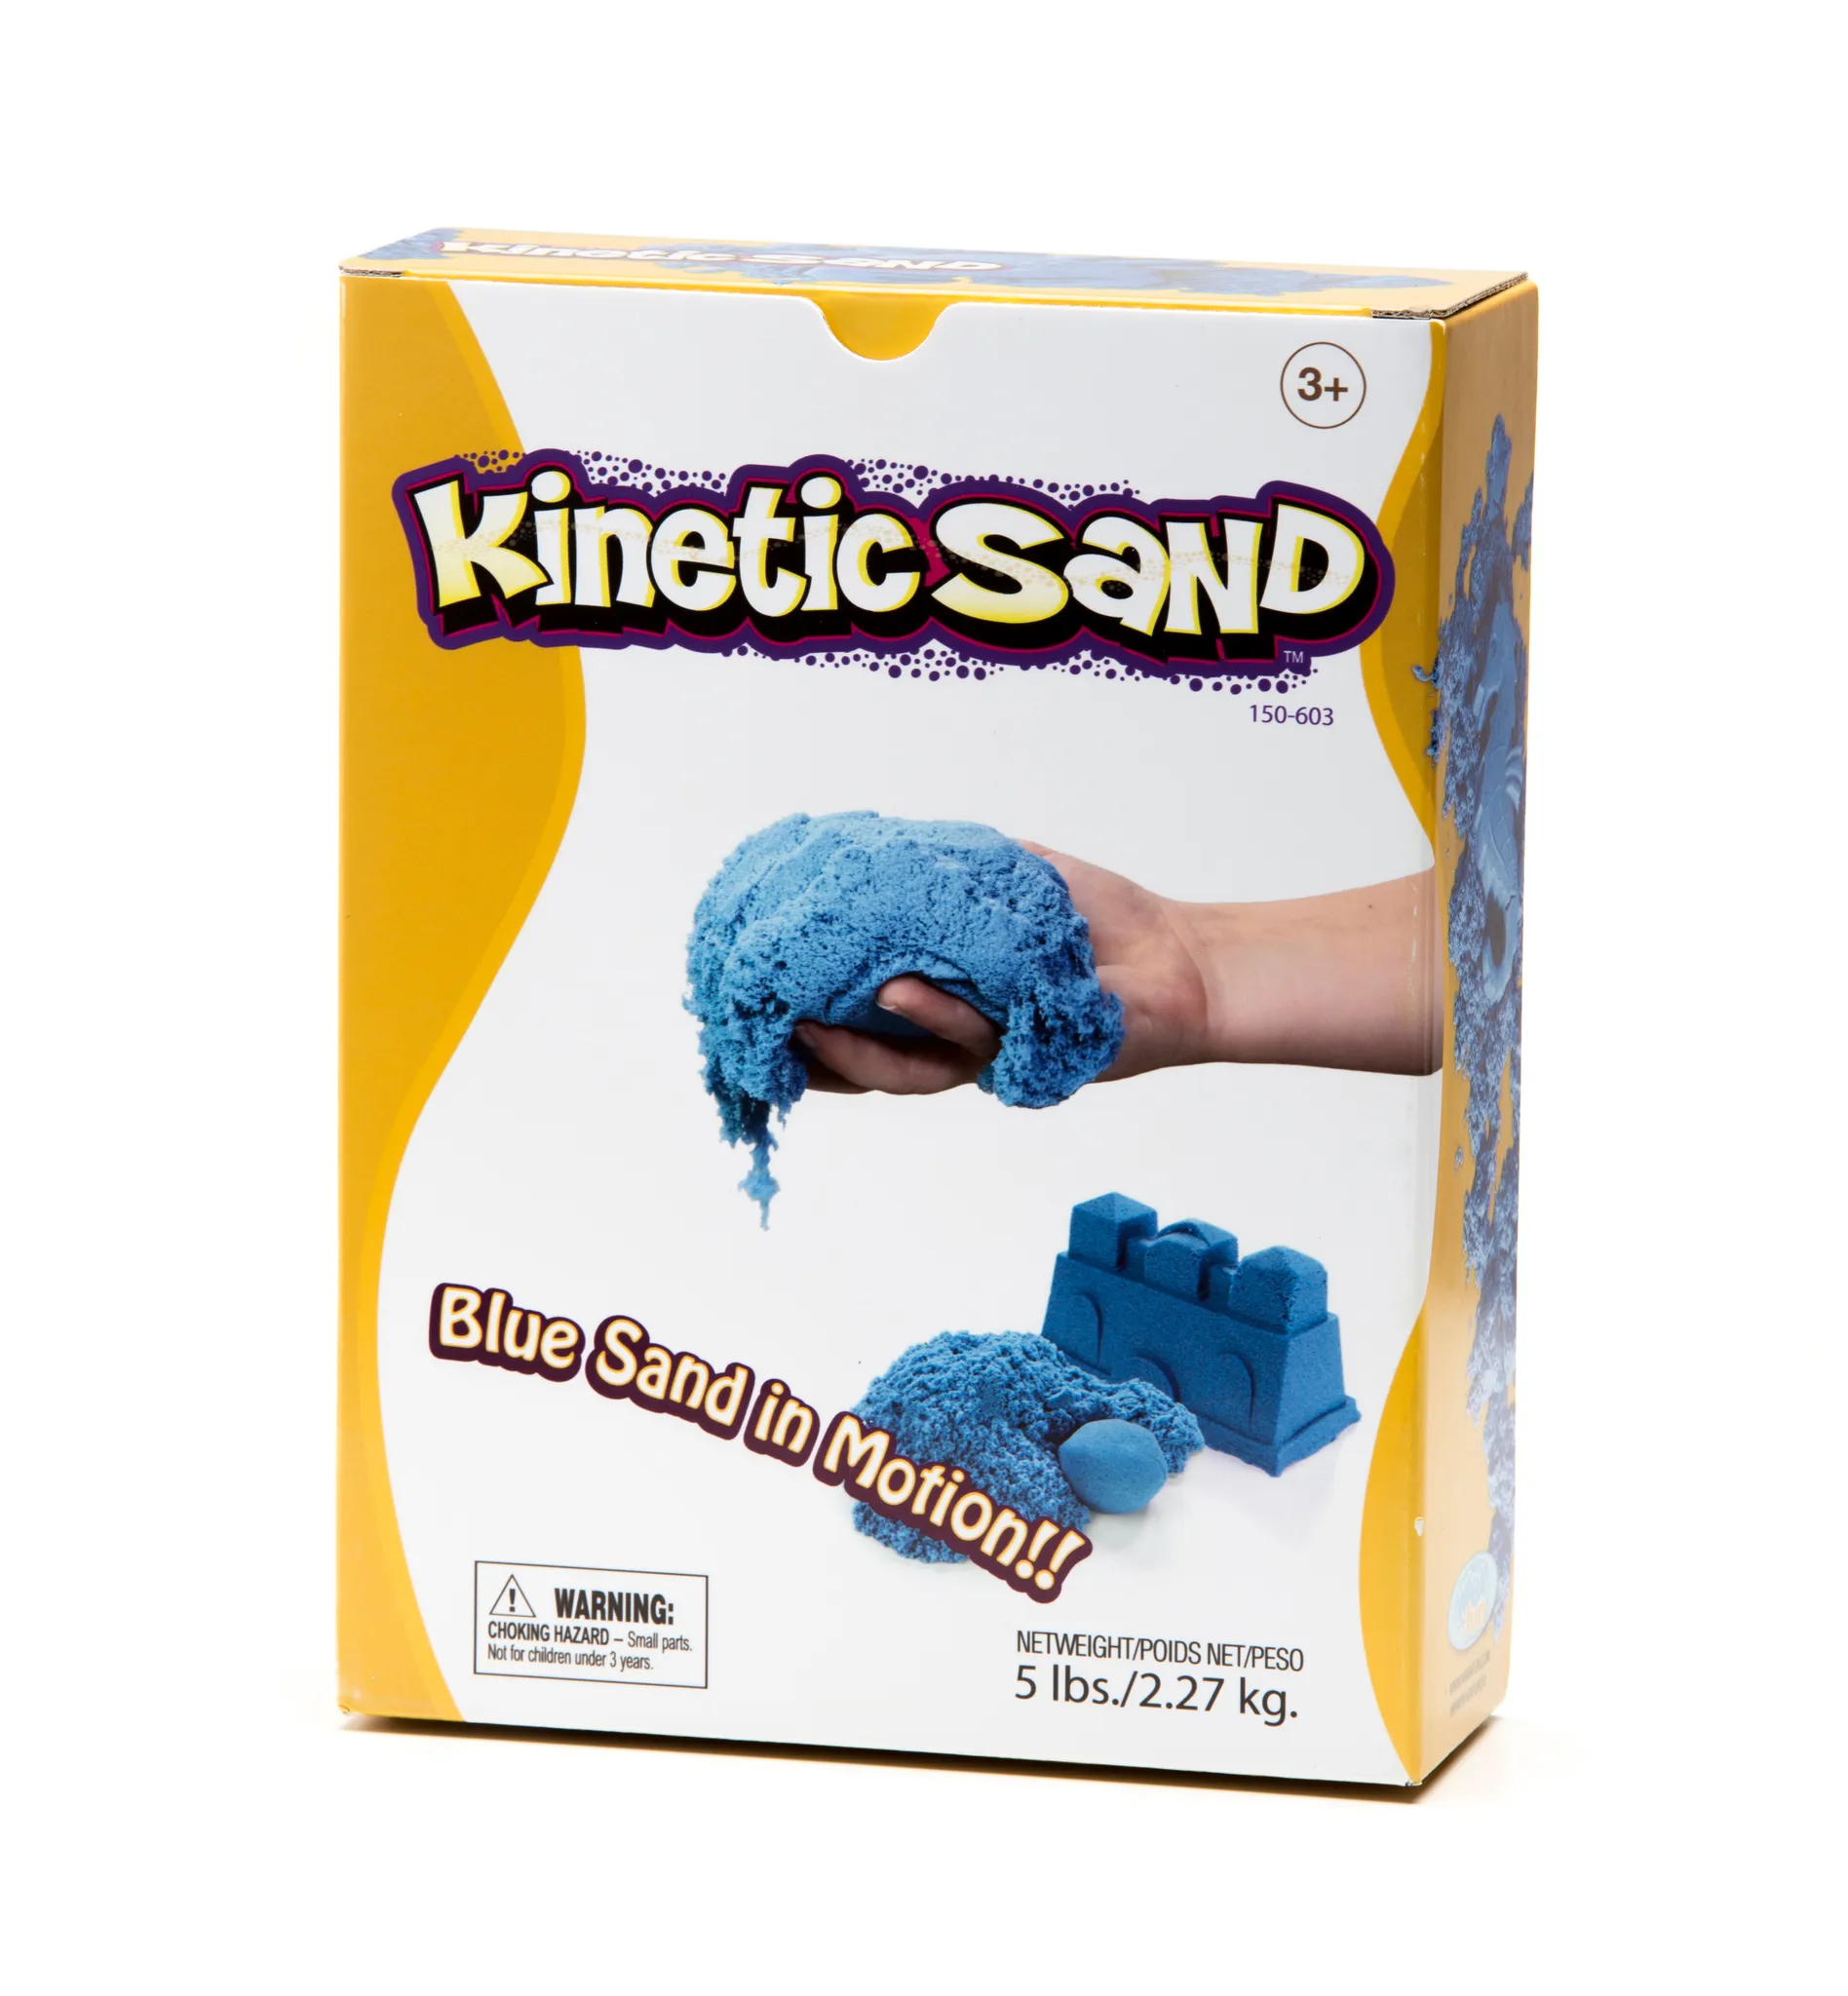 Kinetic Sand mit Zubehör in Brandenburg - Cottbus, Weitere Spielzeug  günstig kaufen, gebraucht oder neu